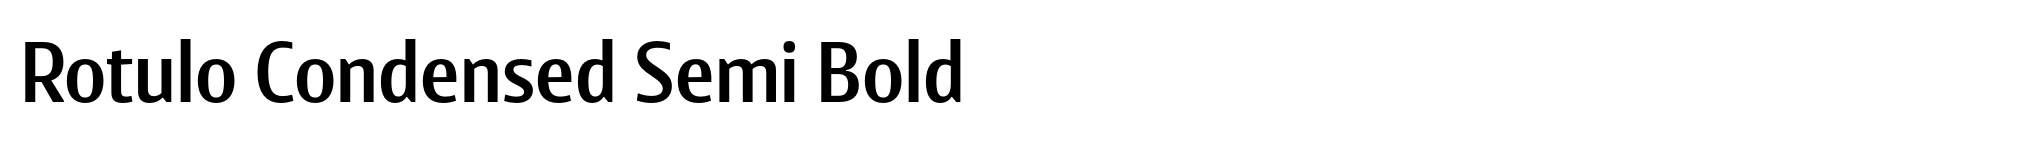 Rotulo Condensed Semi Bold image